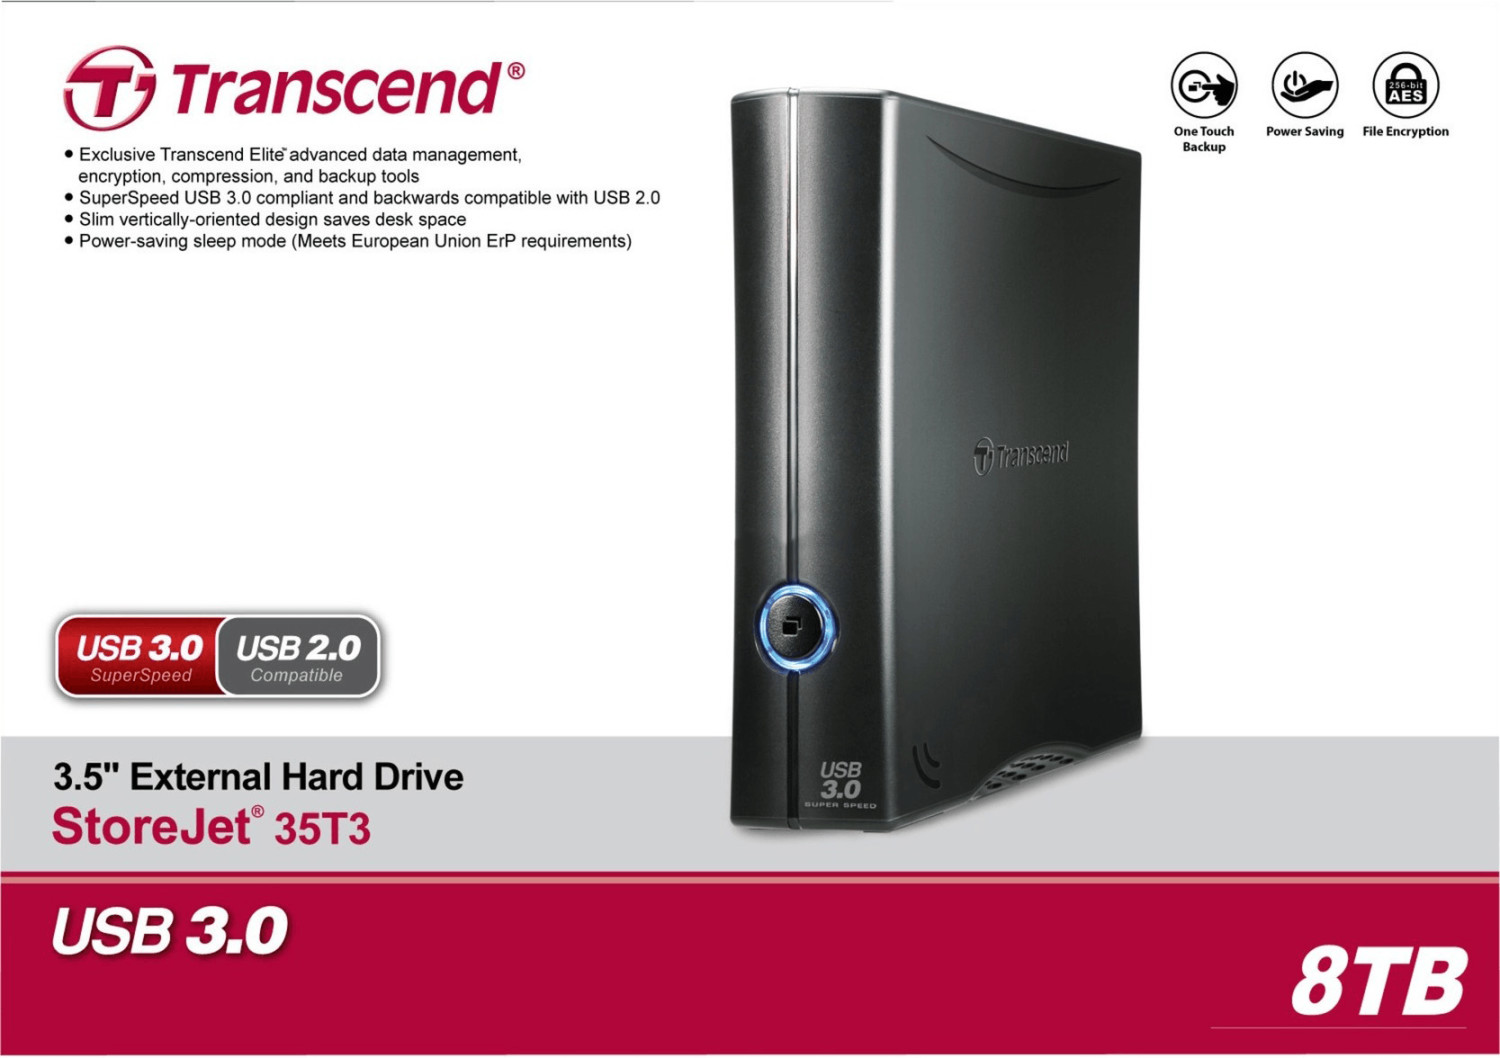 Transcend StoreJet 25M3C 2 To USB-C - Disque dur externe 2,5 - Disque dur  externe - Transcend